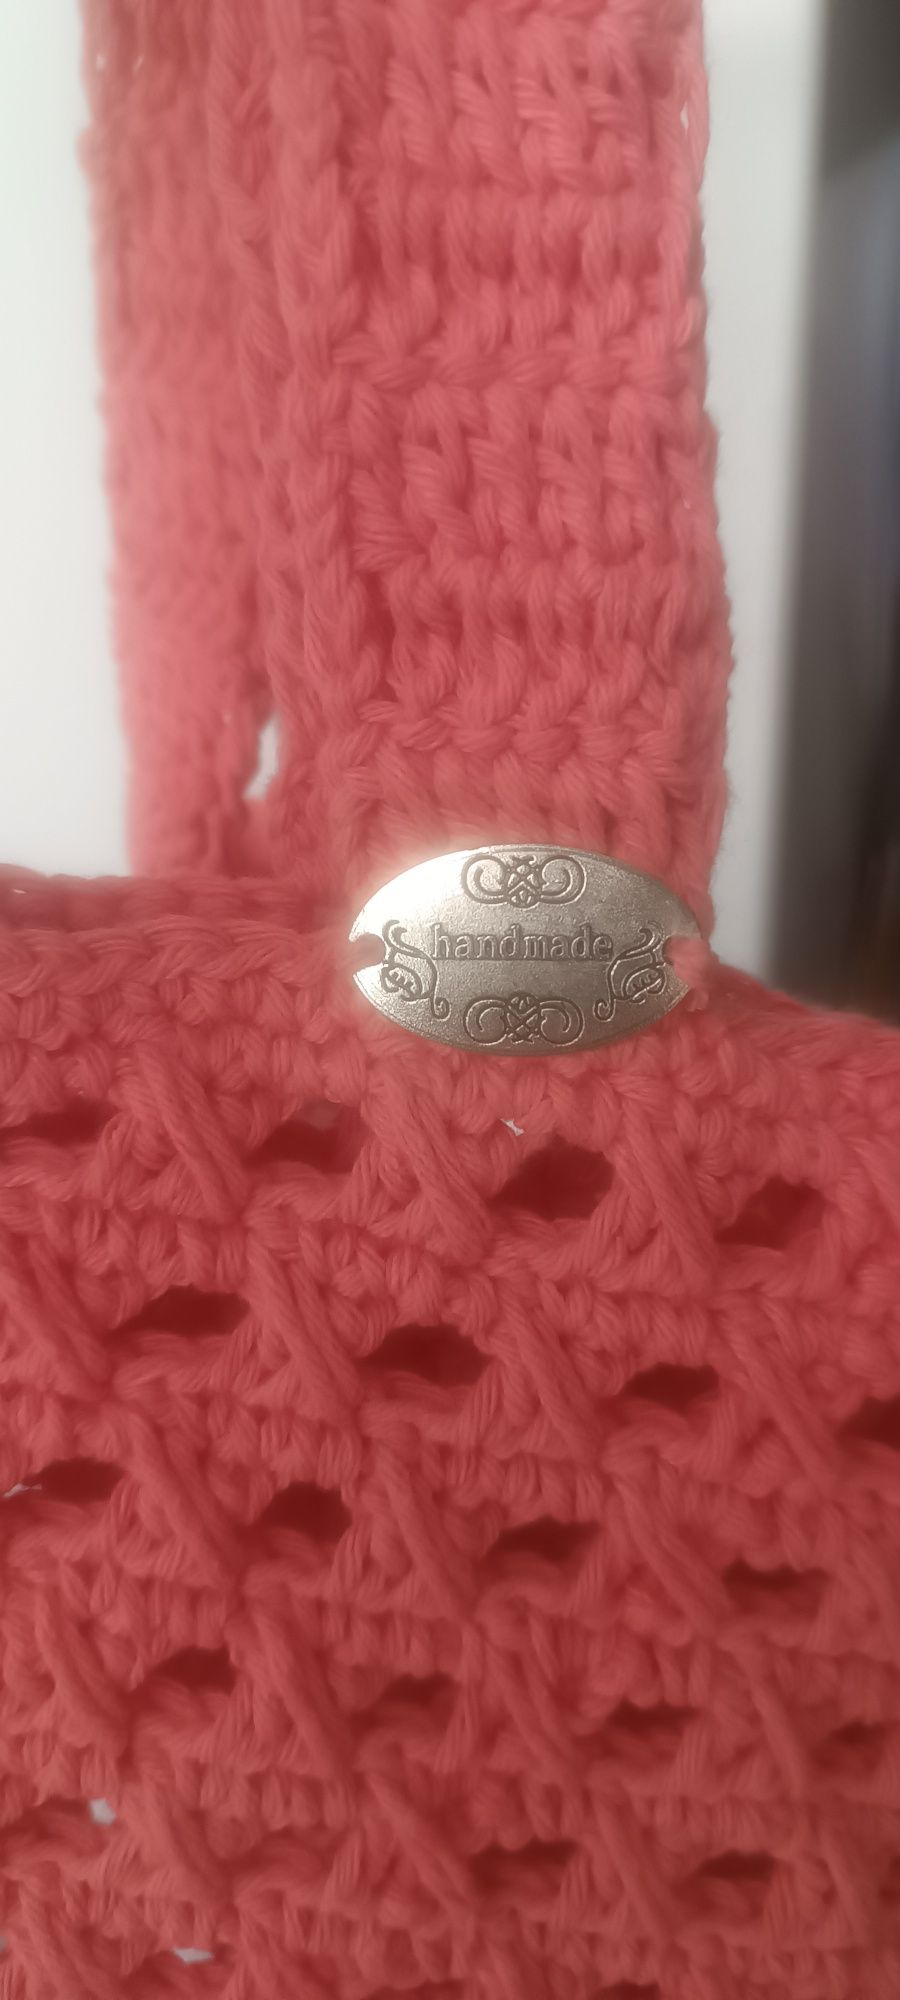 Bolsa/ ecobag em crochê feitas á mão